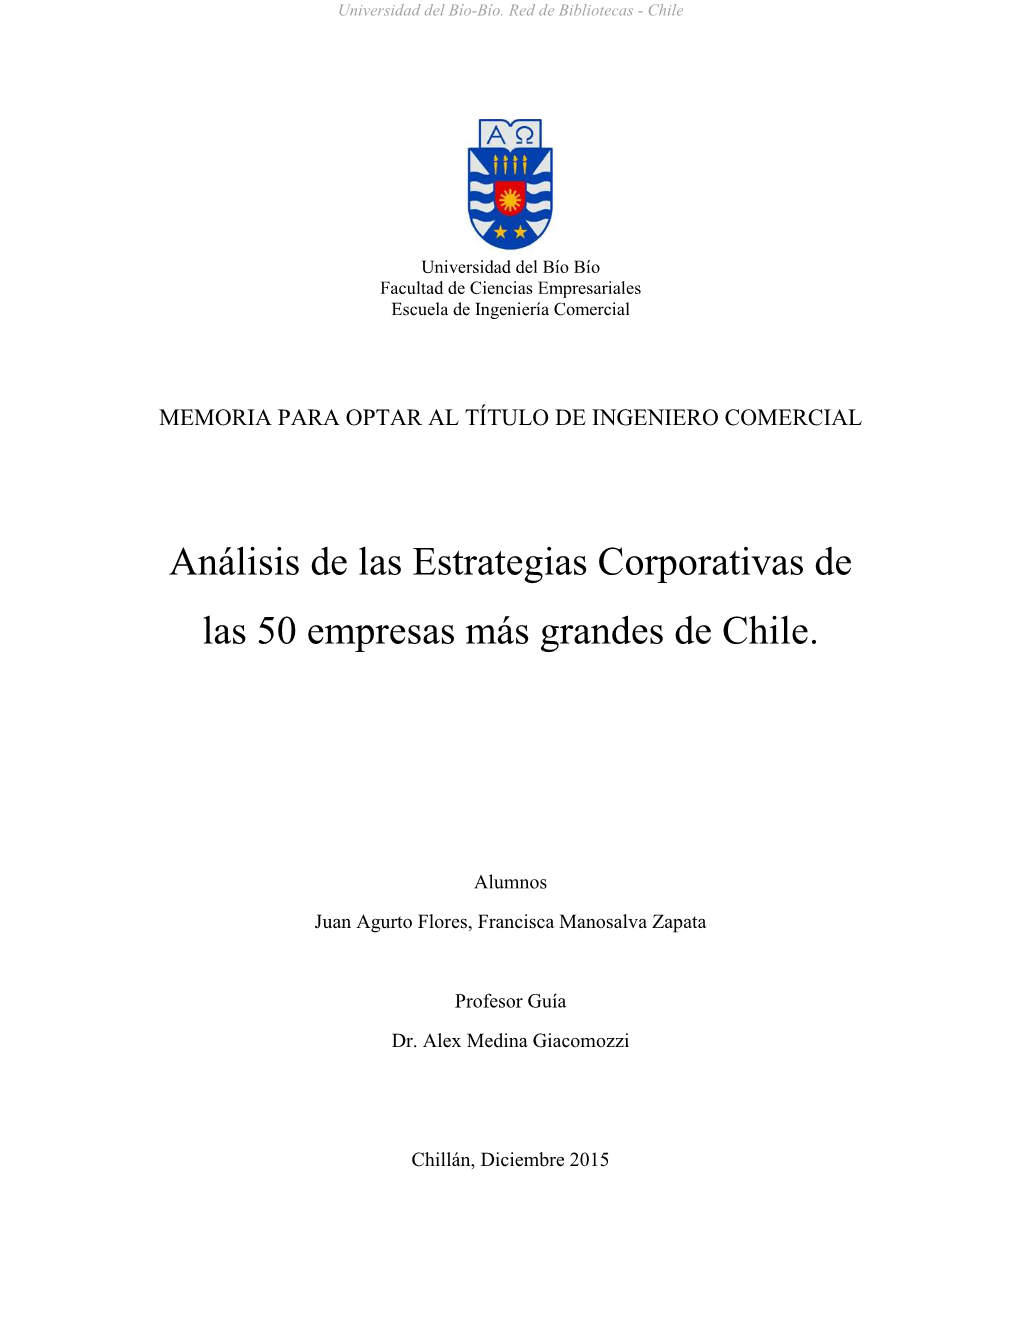 Análisis De Las Estrategias Corporativas De Las 50 Empresas Más Grandes De Chile